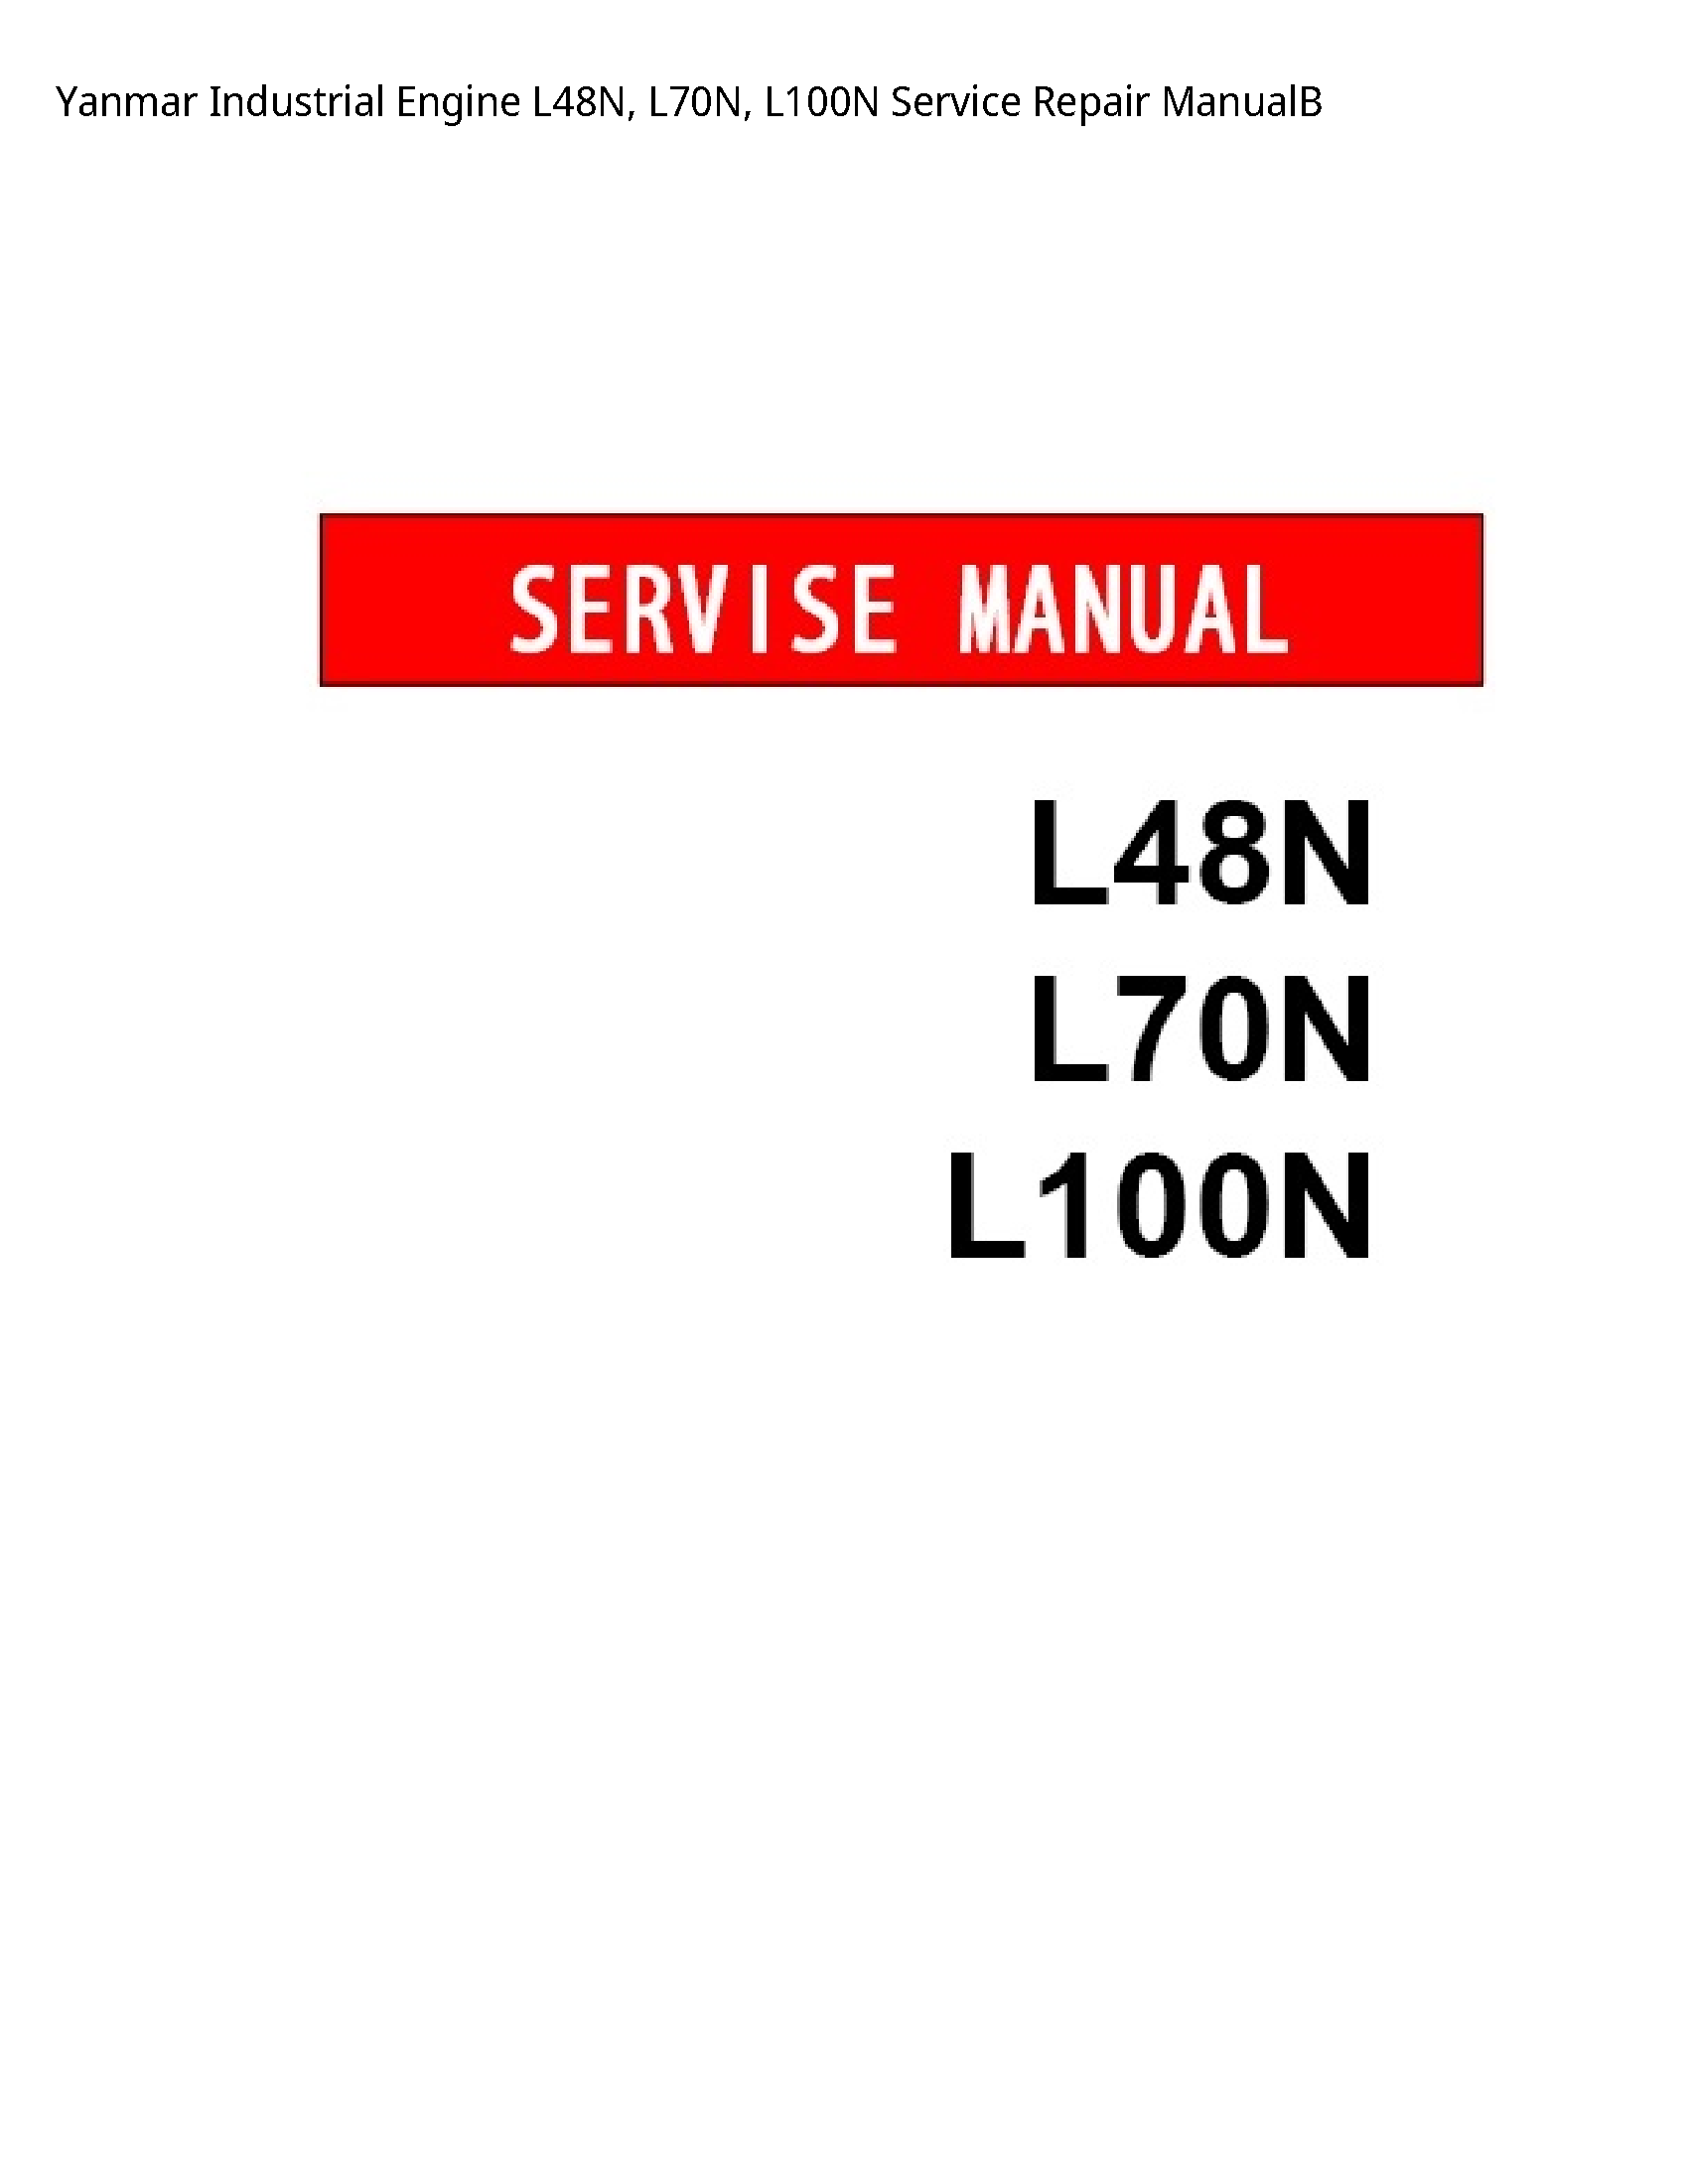 Yanmar L48N Industrial Engine manual